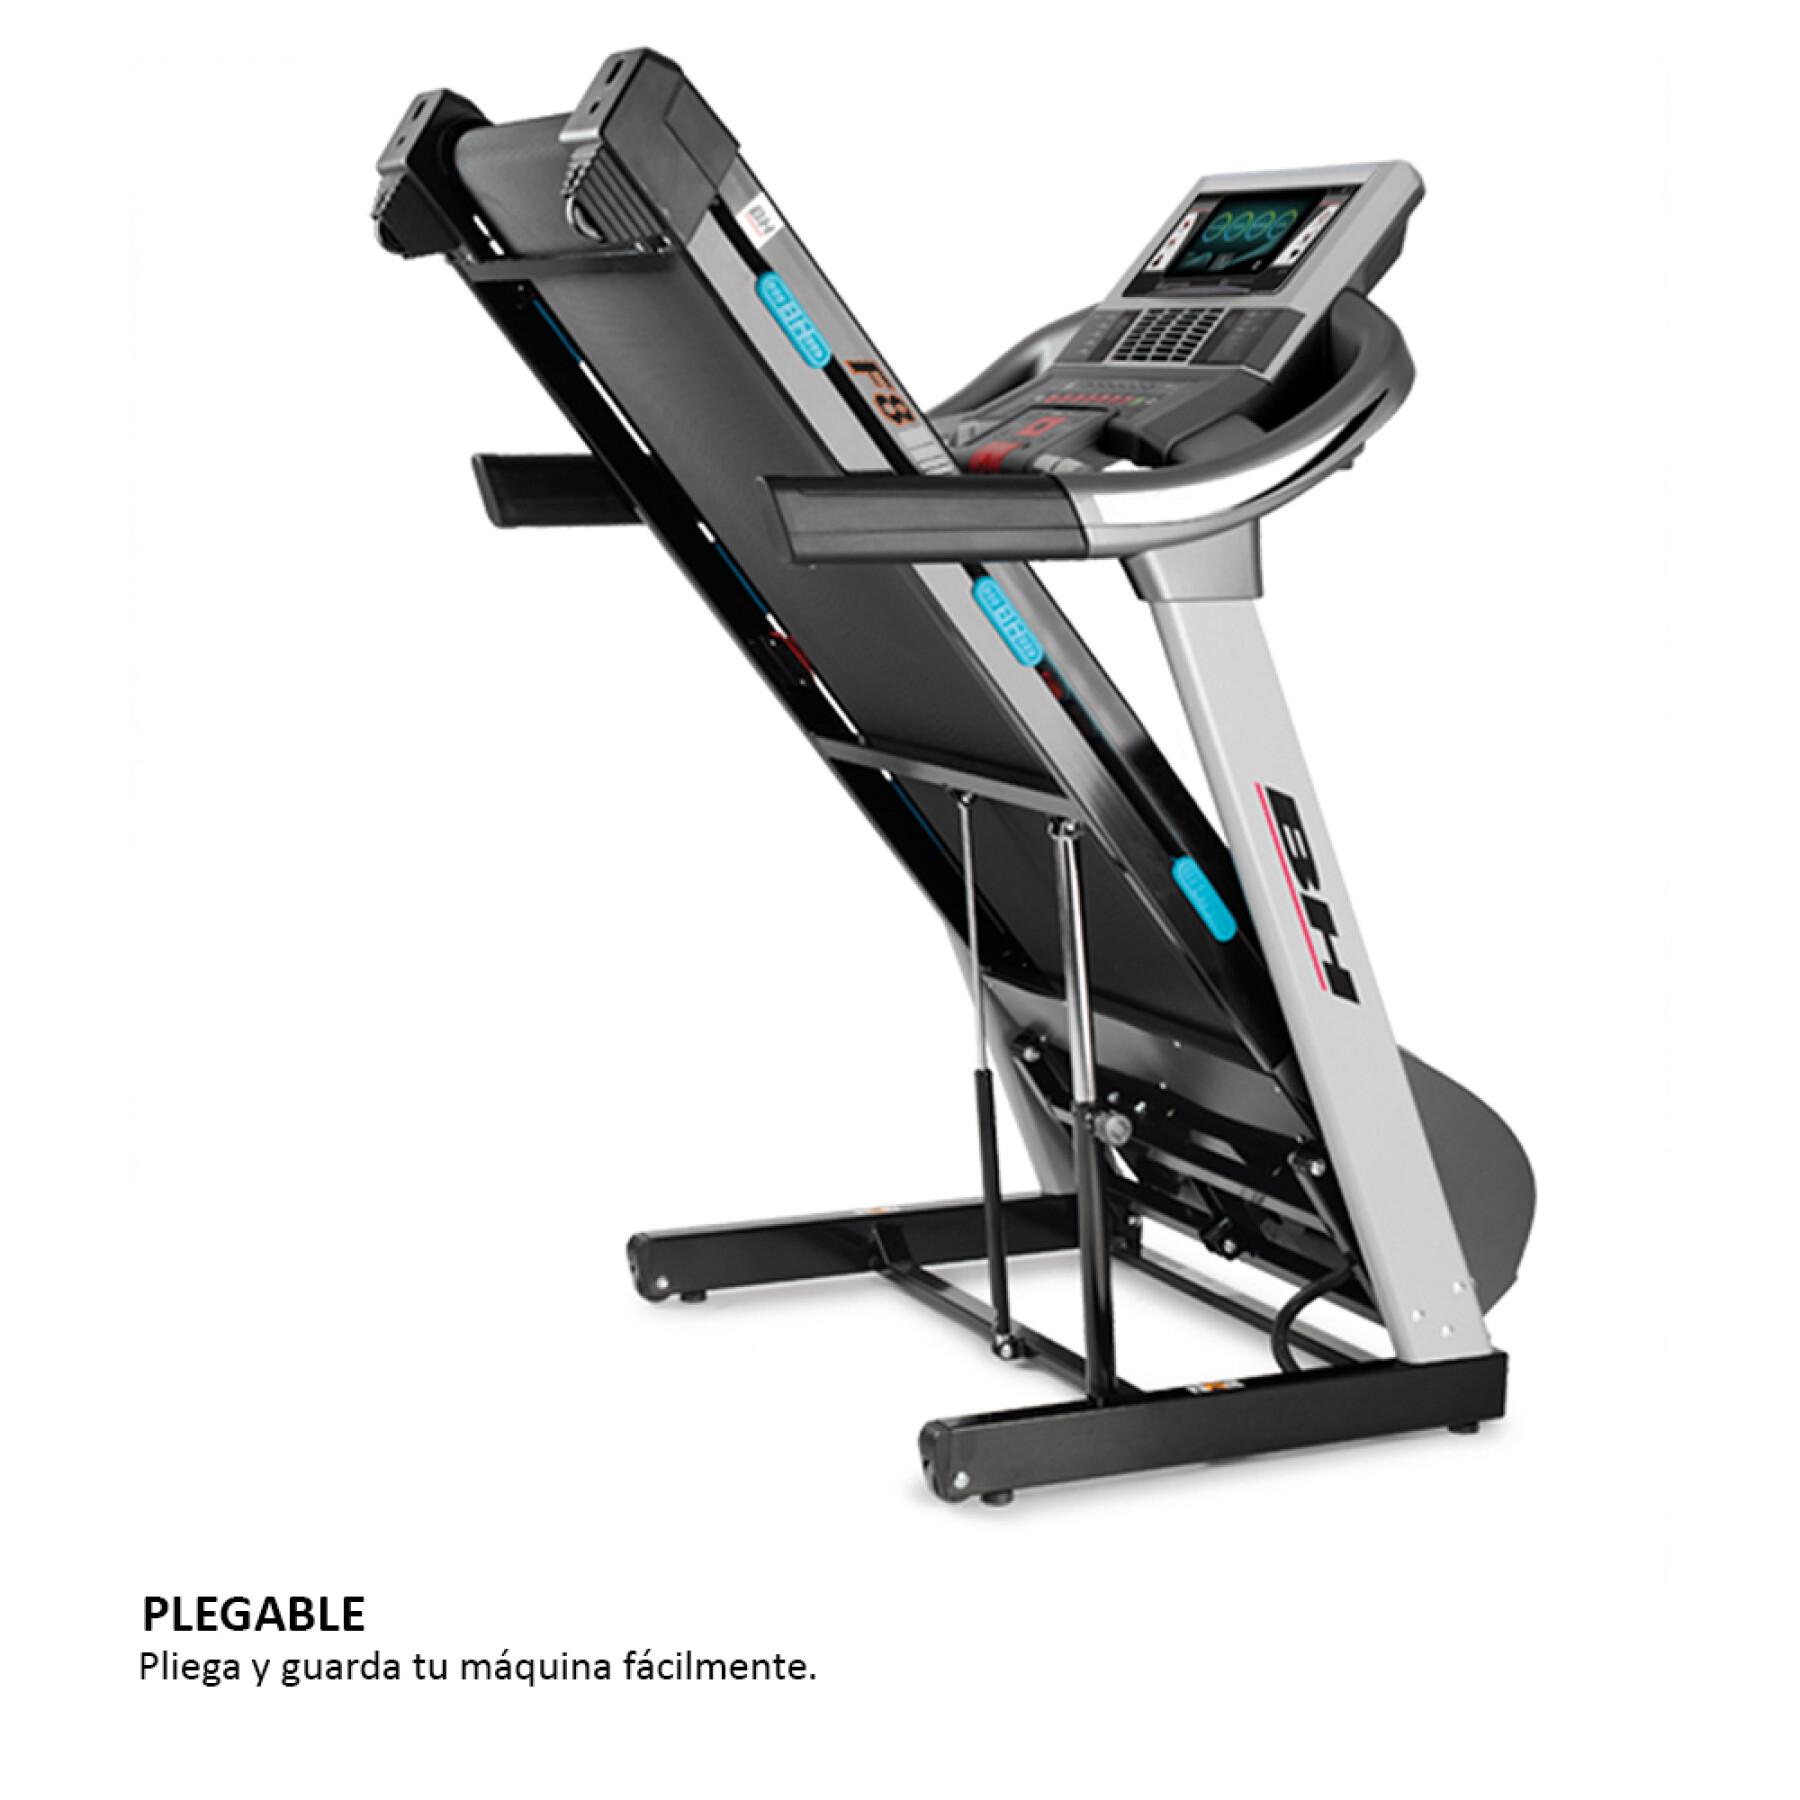 Treadmill Bh Fitness F8 Tft